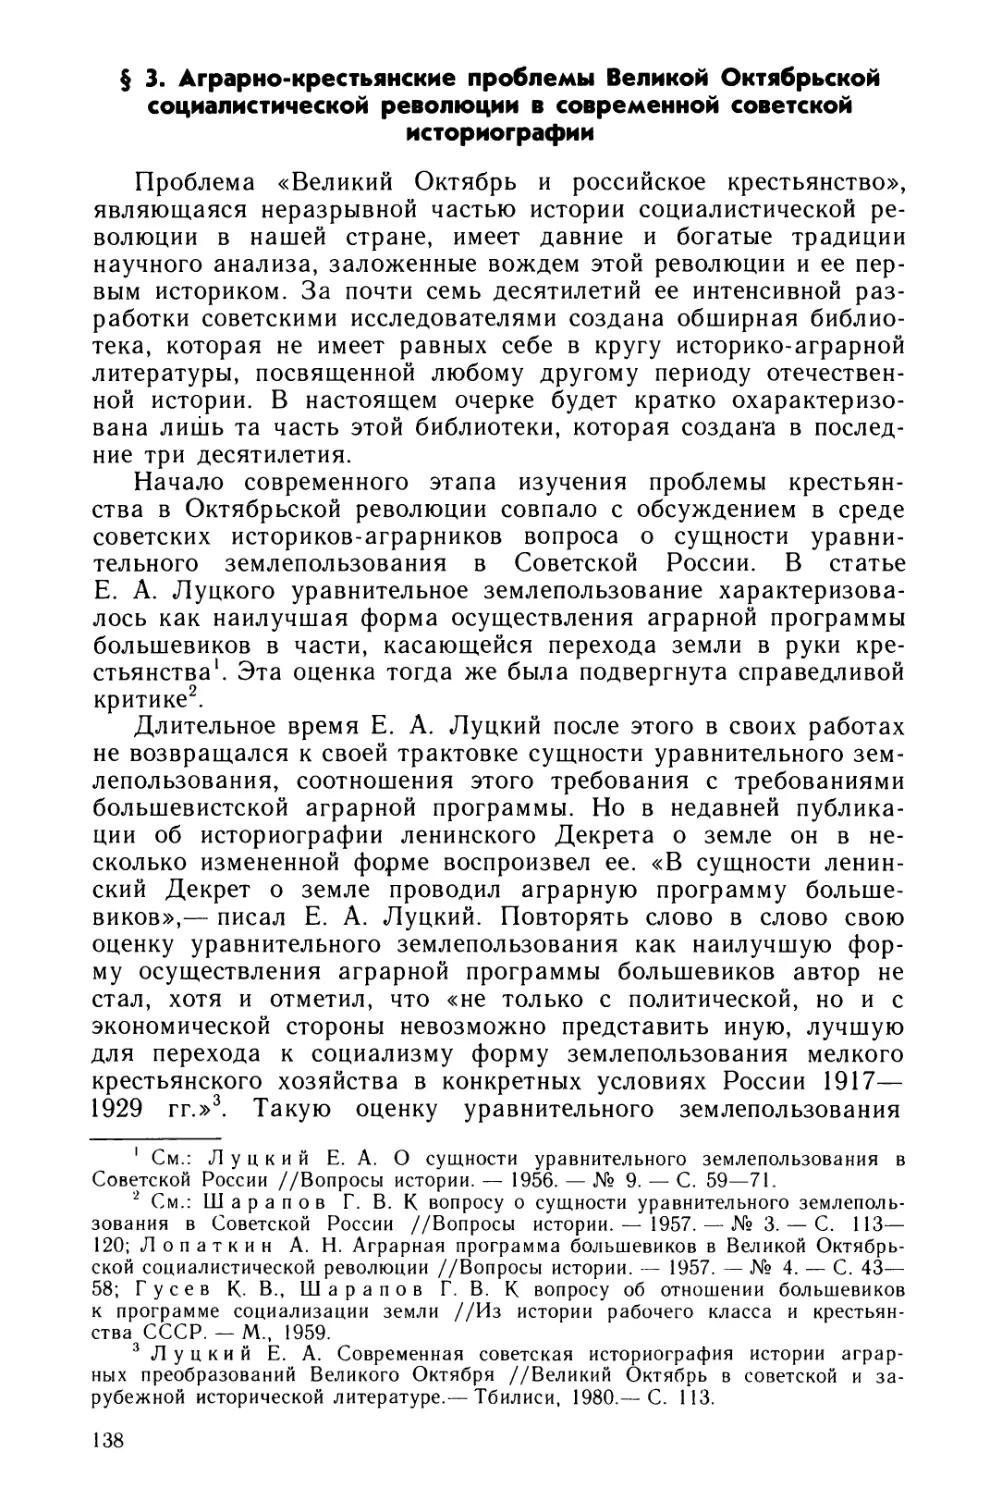 § 3. Аграрно-крестьянские проблемы Великой Октябрьской социалистической революции в современной советской историографии